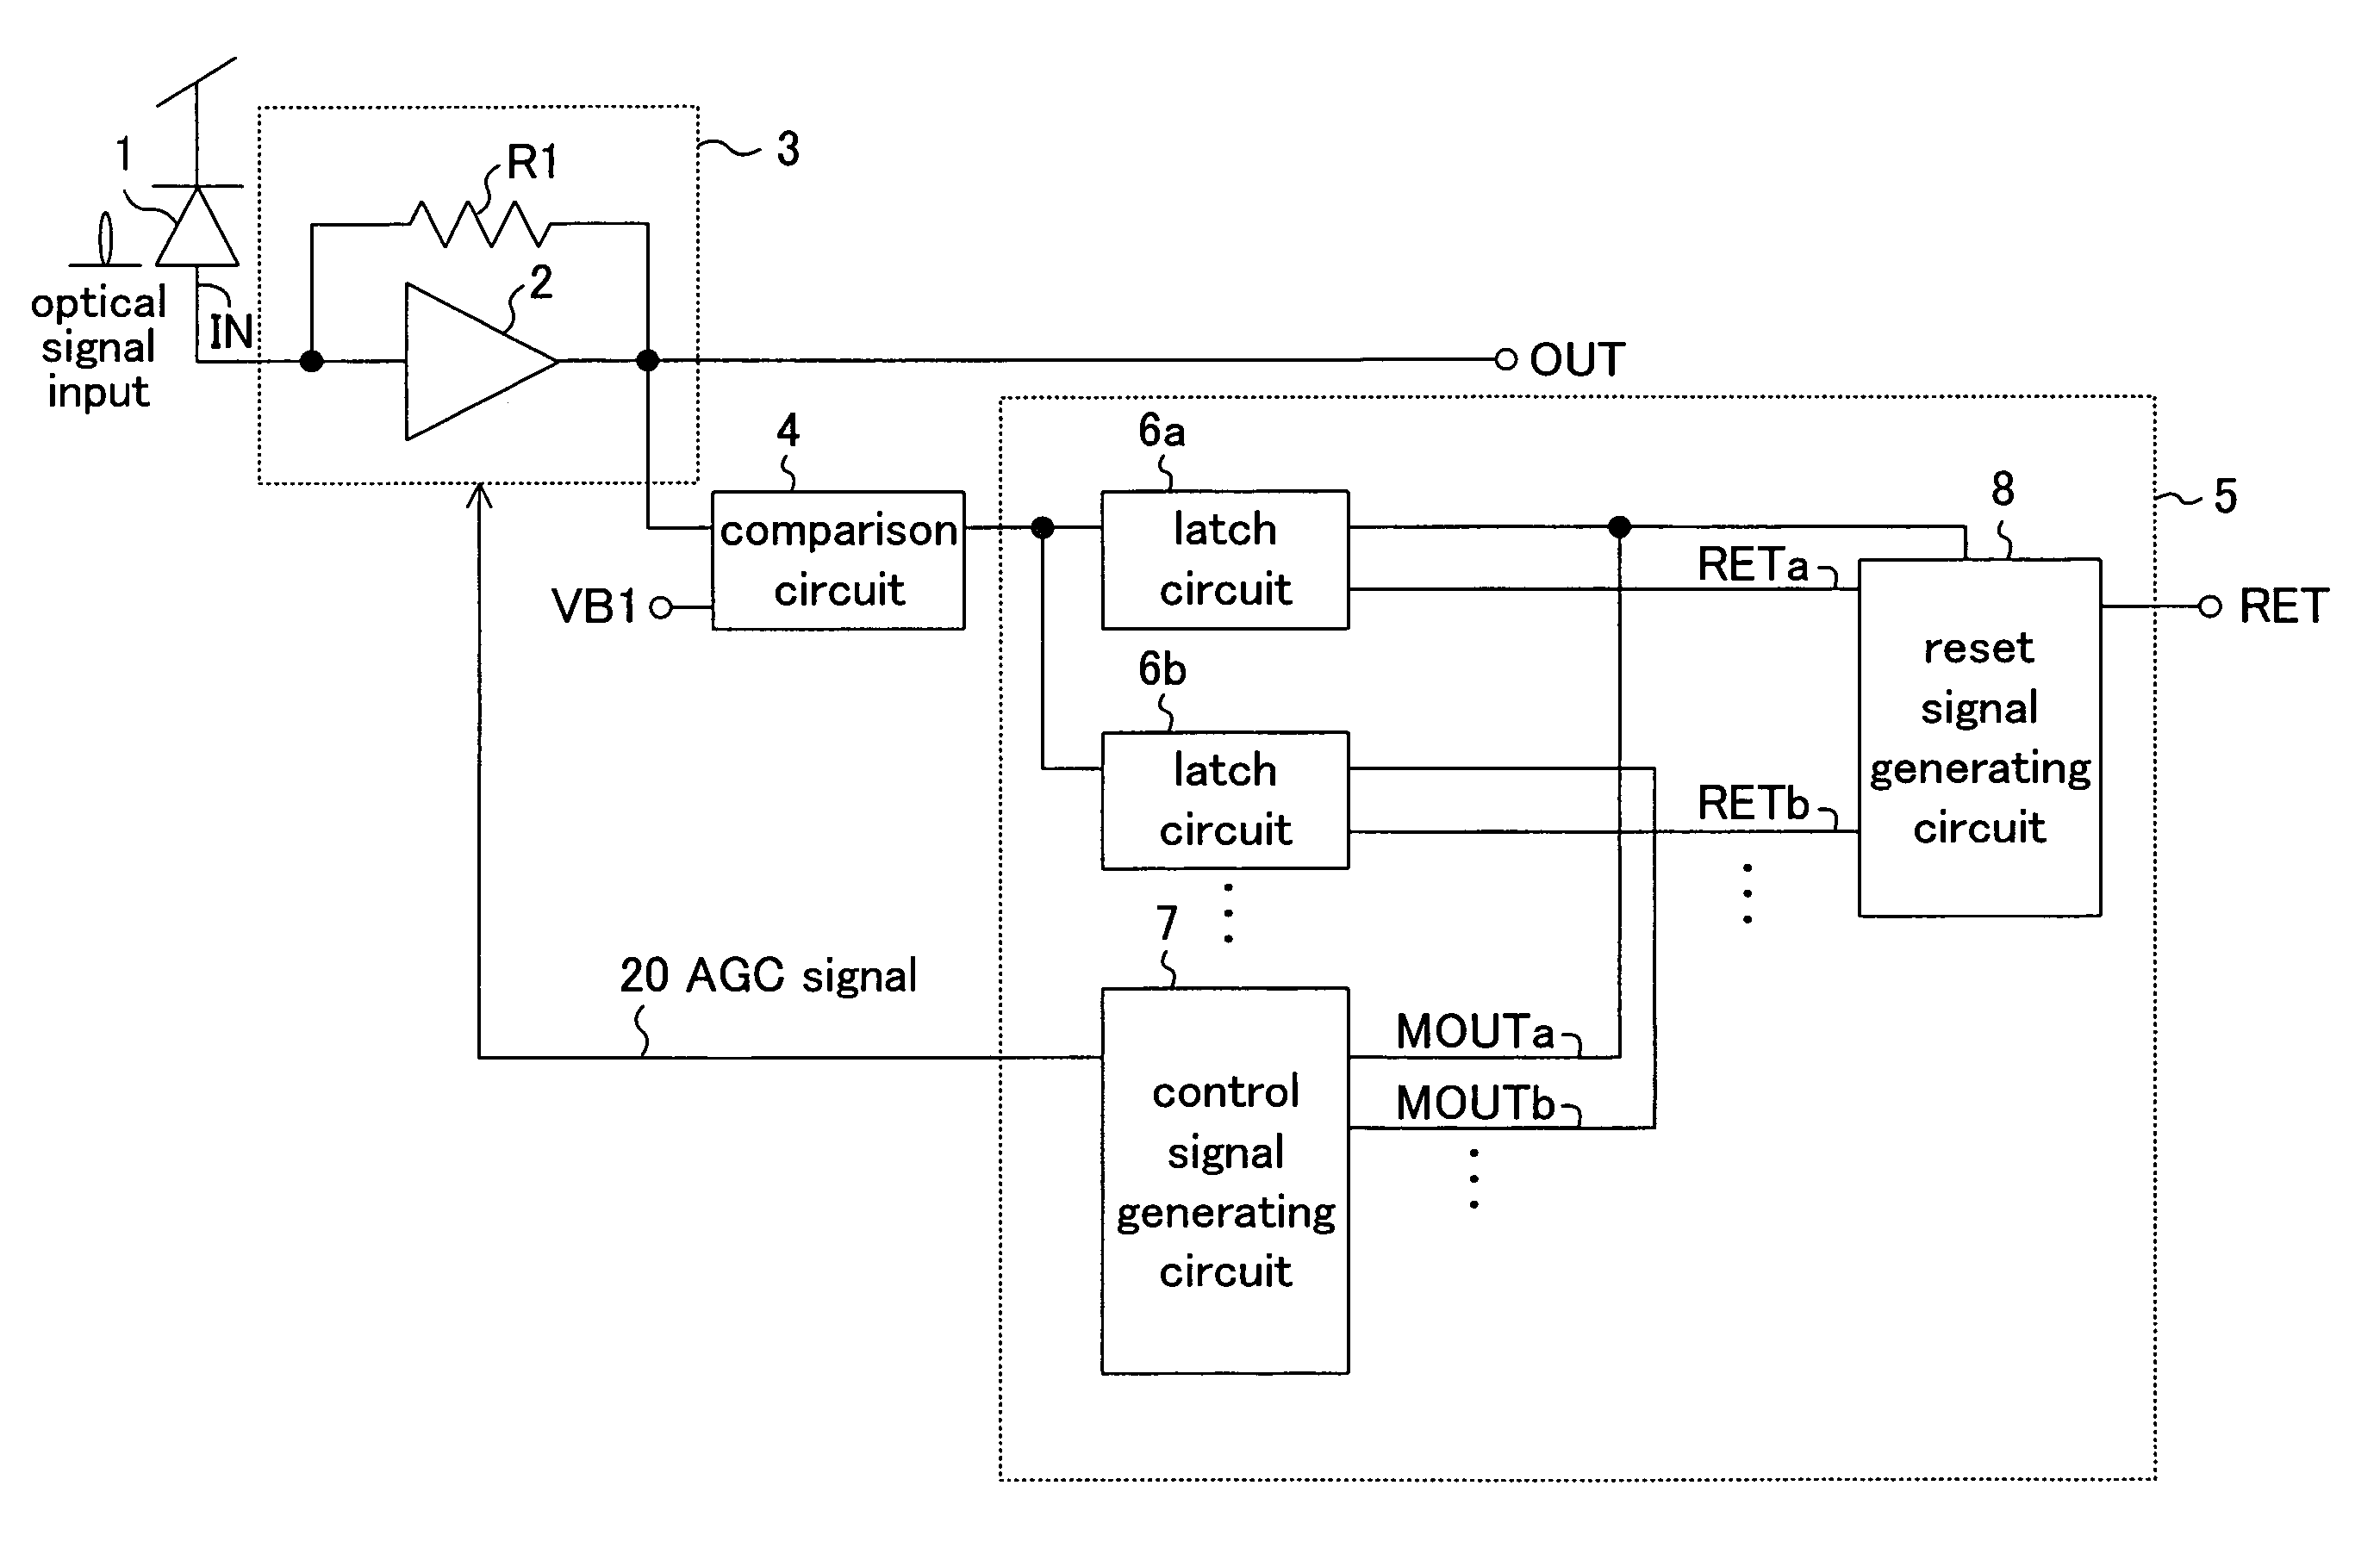 Receiving circuit and optical signal receiving circuit